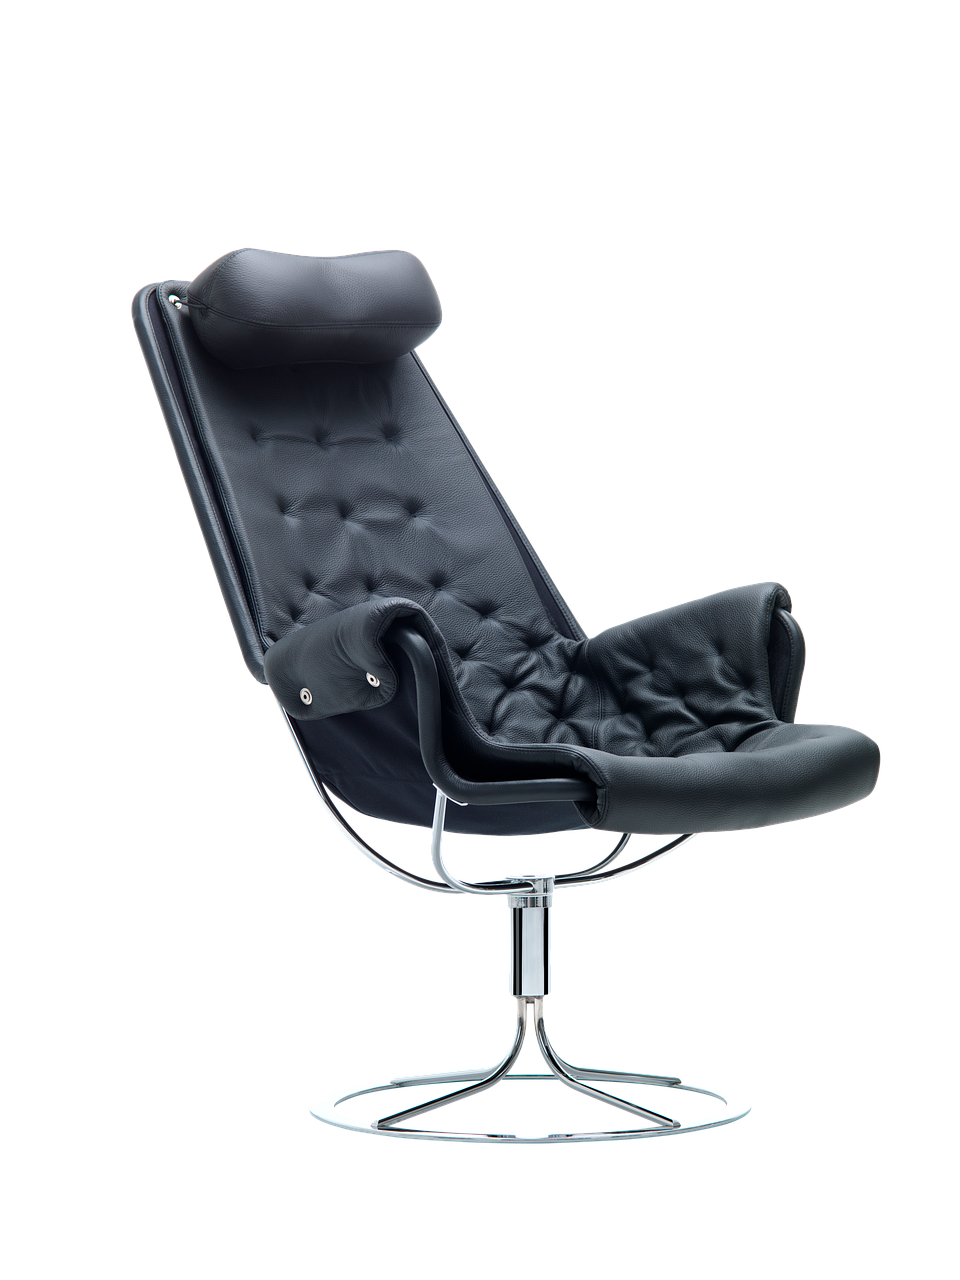 Les meilleurs fauteuils de bureau ergonomiques pour soulager votre mal de dos